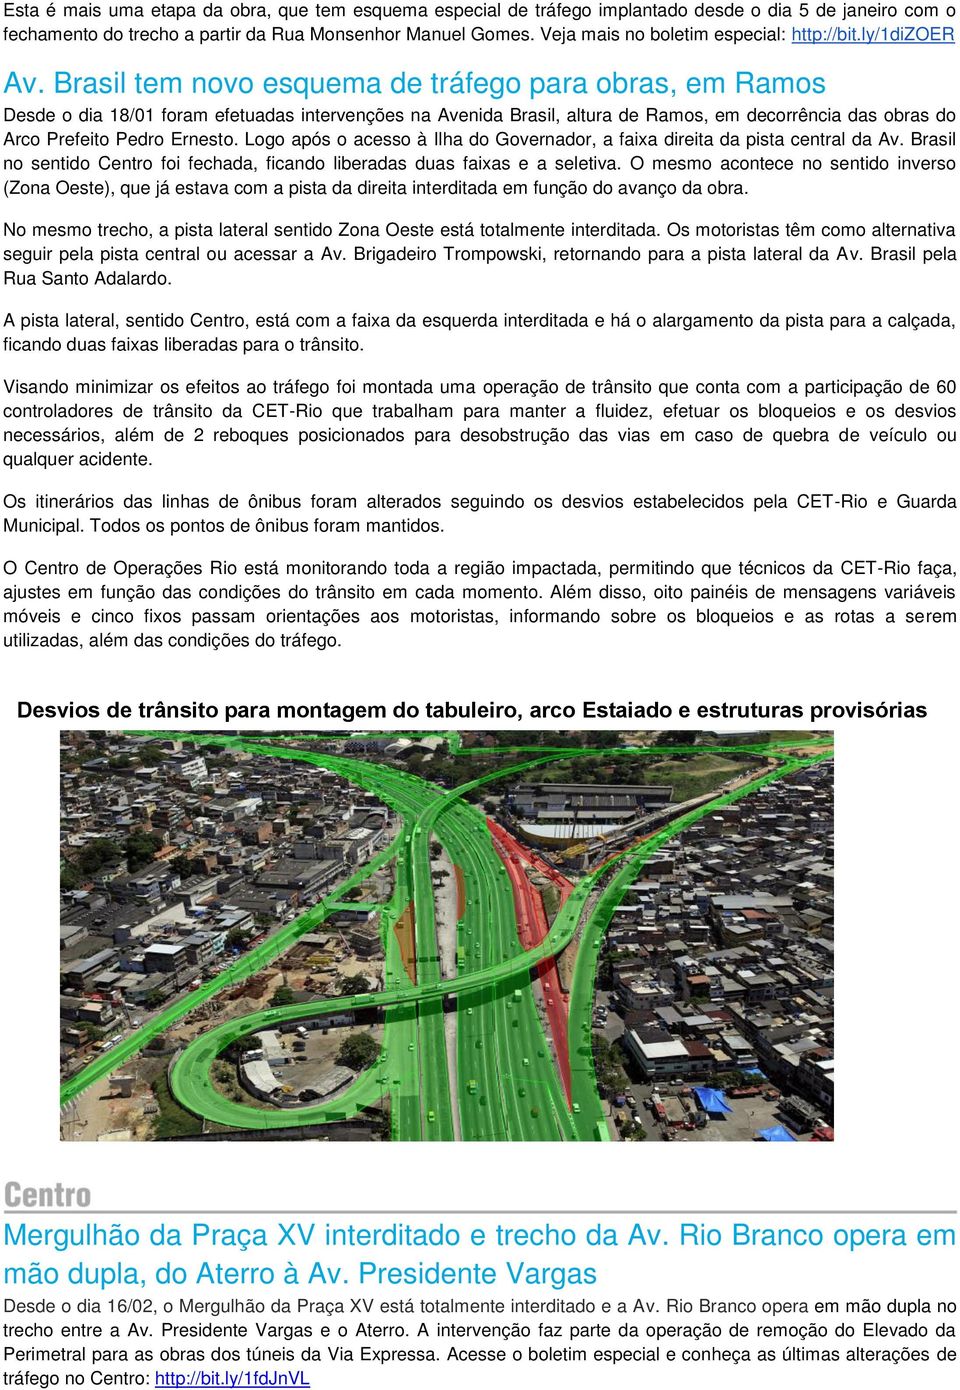 Brasil tem novo esquema de tráfego para obras, em Ramos Desde o dia 18/01 foram efetuadas intervenções na Avenida Brasil, altura de Ramos, em decorrência das obras do Arco Prefeito Pedro Ernesto.